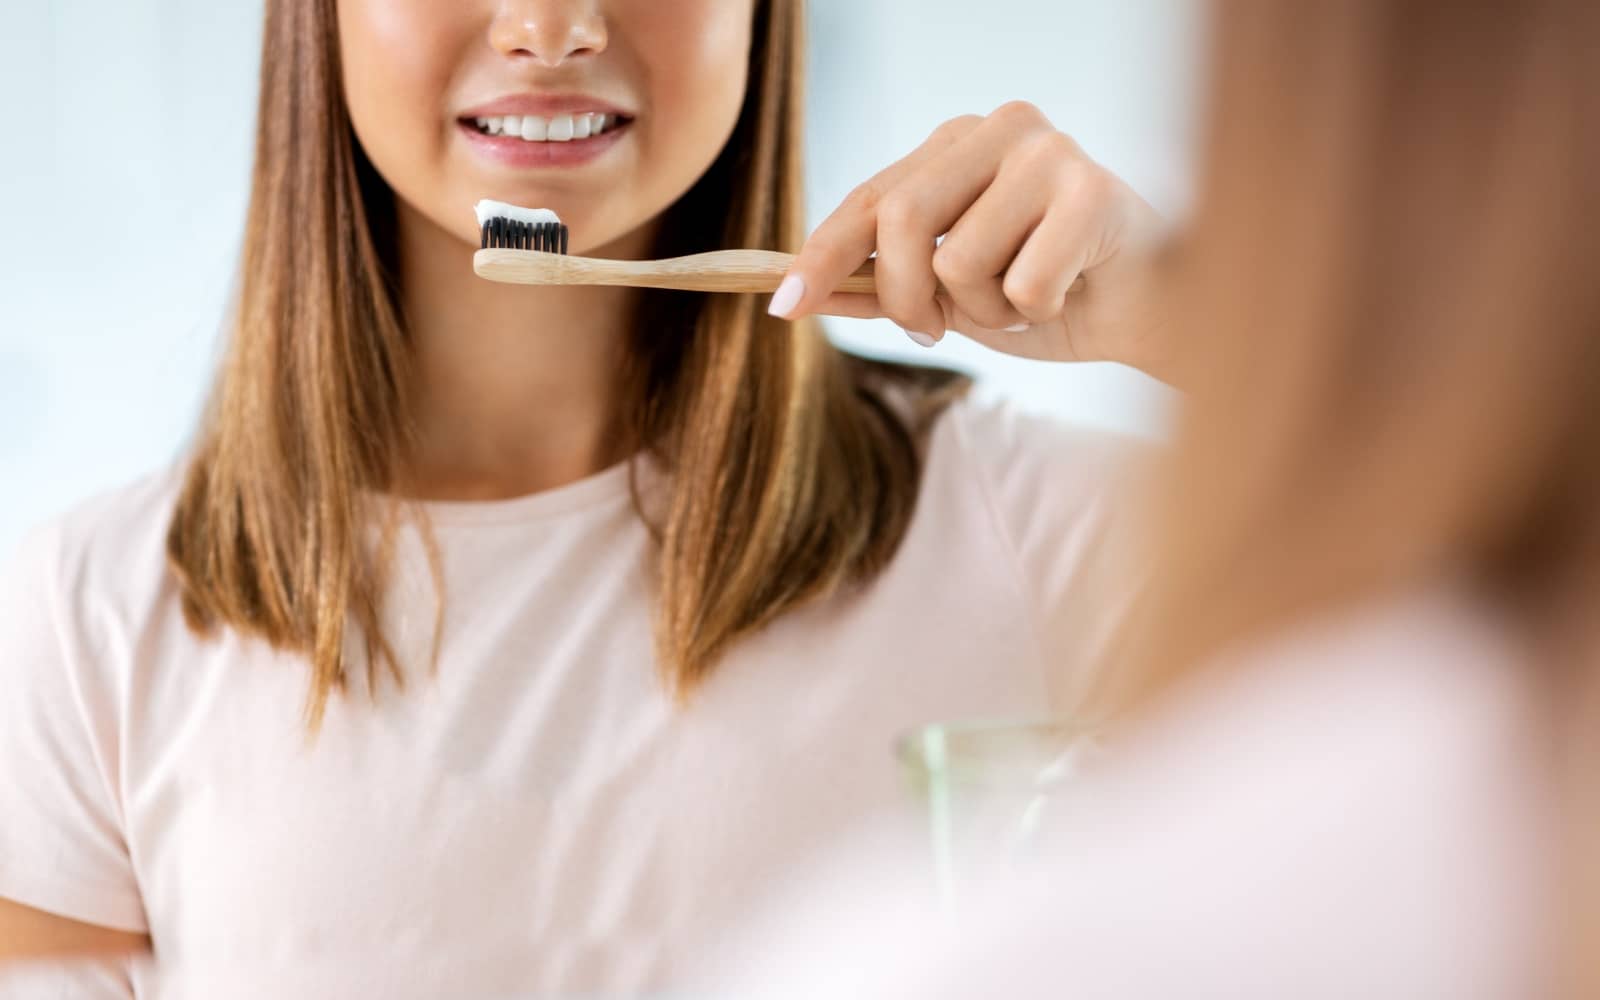 Le blanchiment dentaire professionnel à domicile - Dentiste Tremblay